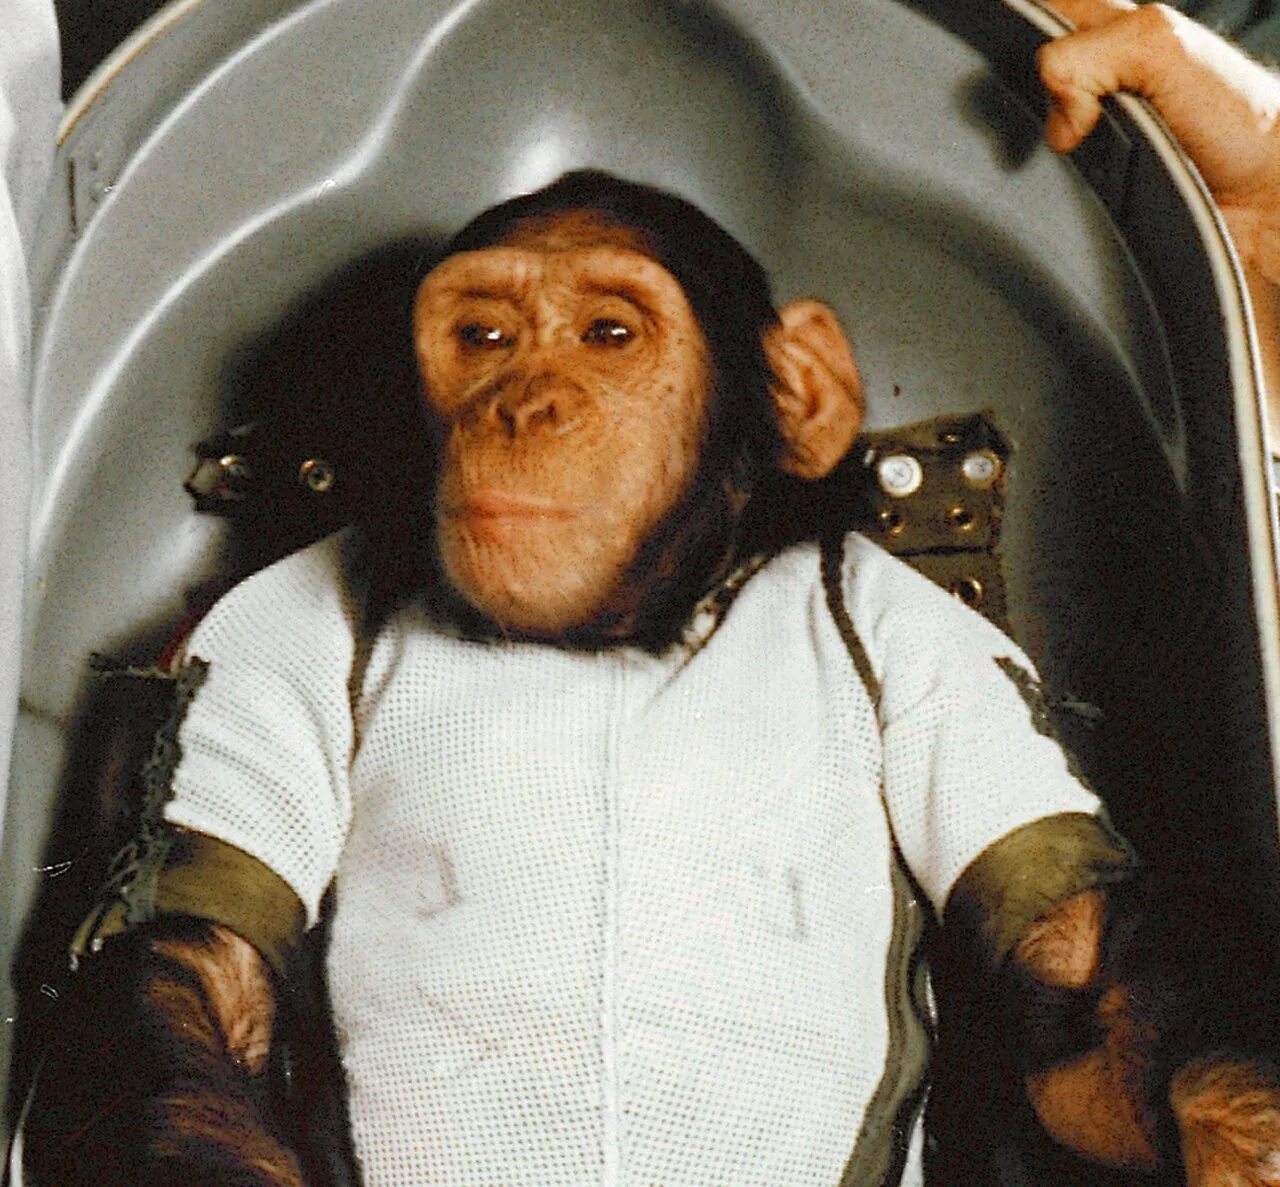 Первая обезьяна полетевшая в космос. Шимпанзе Хэм космонавт.